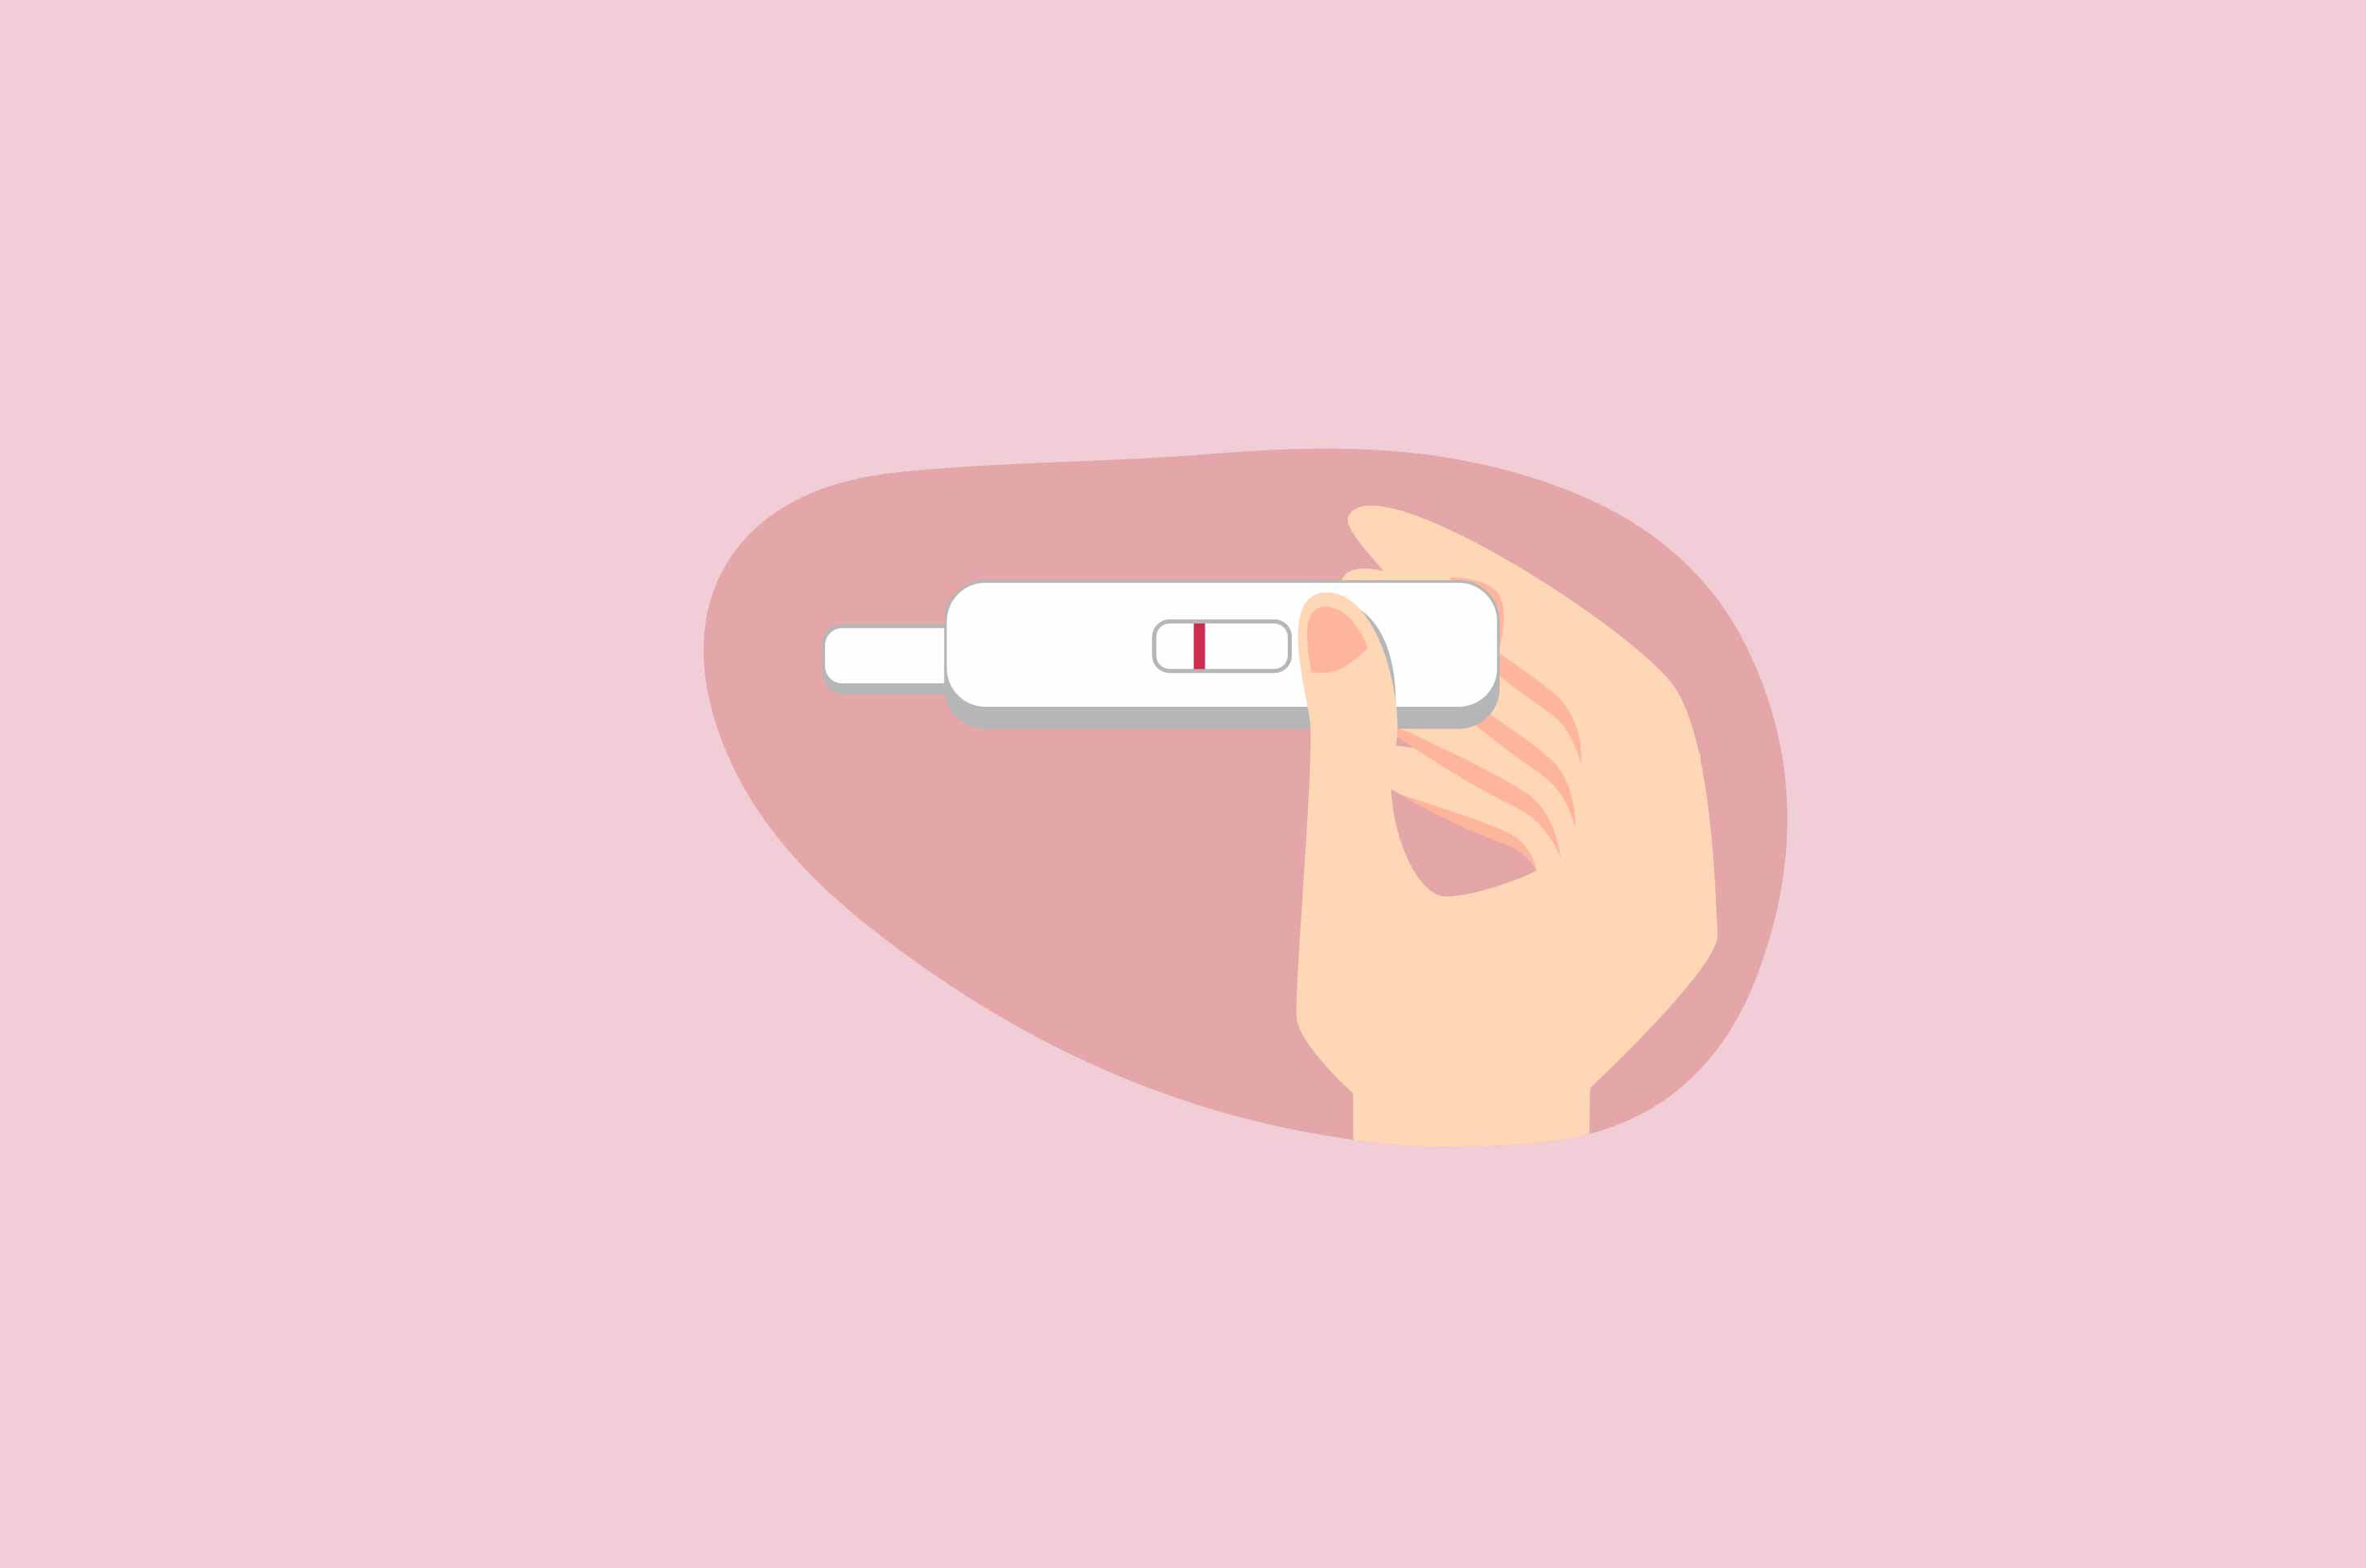 여성들은 불규칙한 월경으로 인해 임신이 어려운데, 그 이유는 무엇인가요?